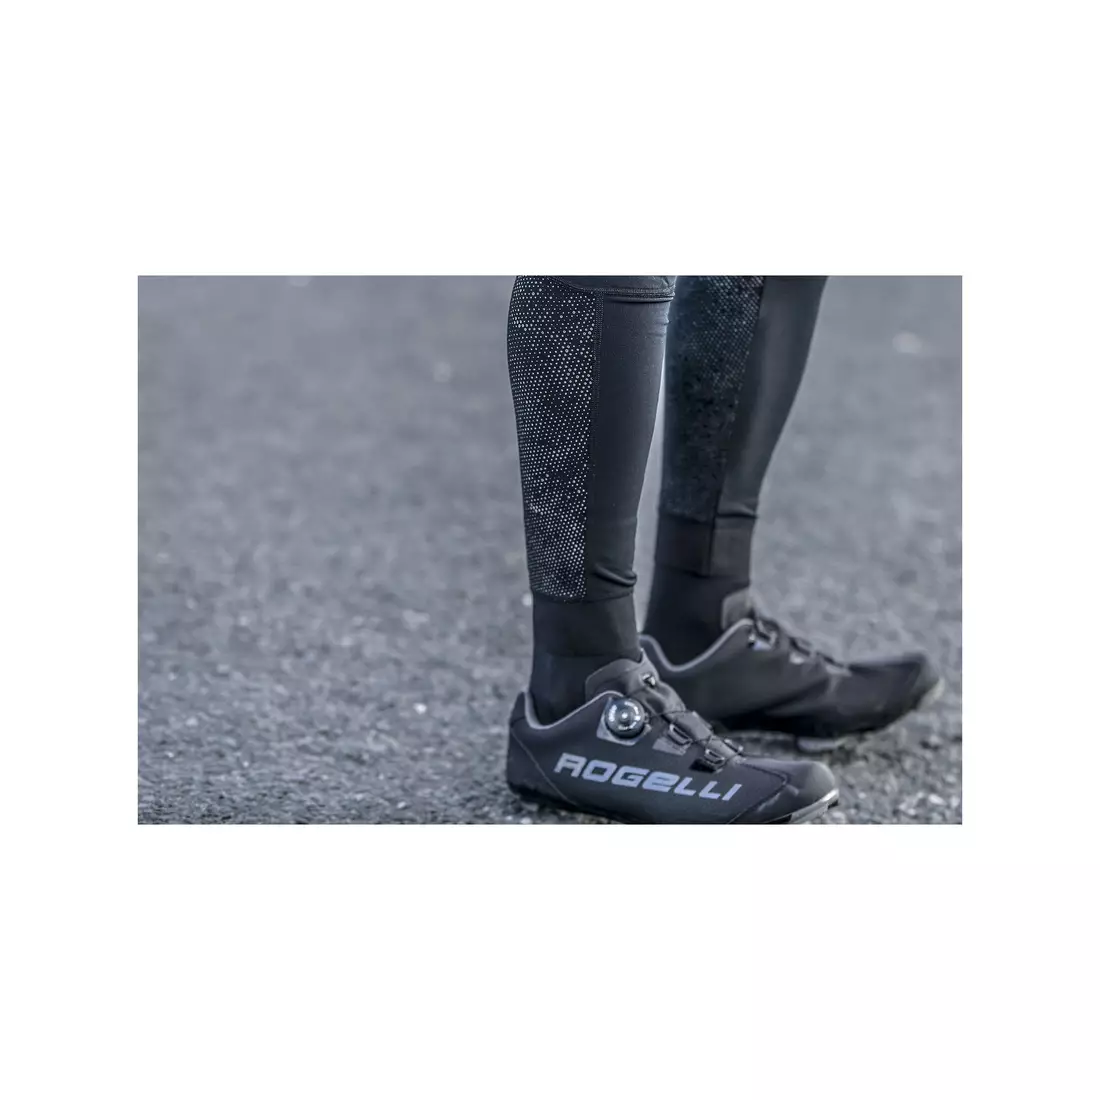 ROGELLI pánské izolované cyklistické kalhoty VENOSA 3.0 s odleskem, černé